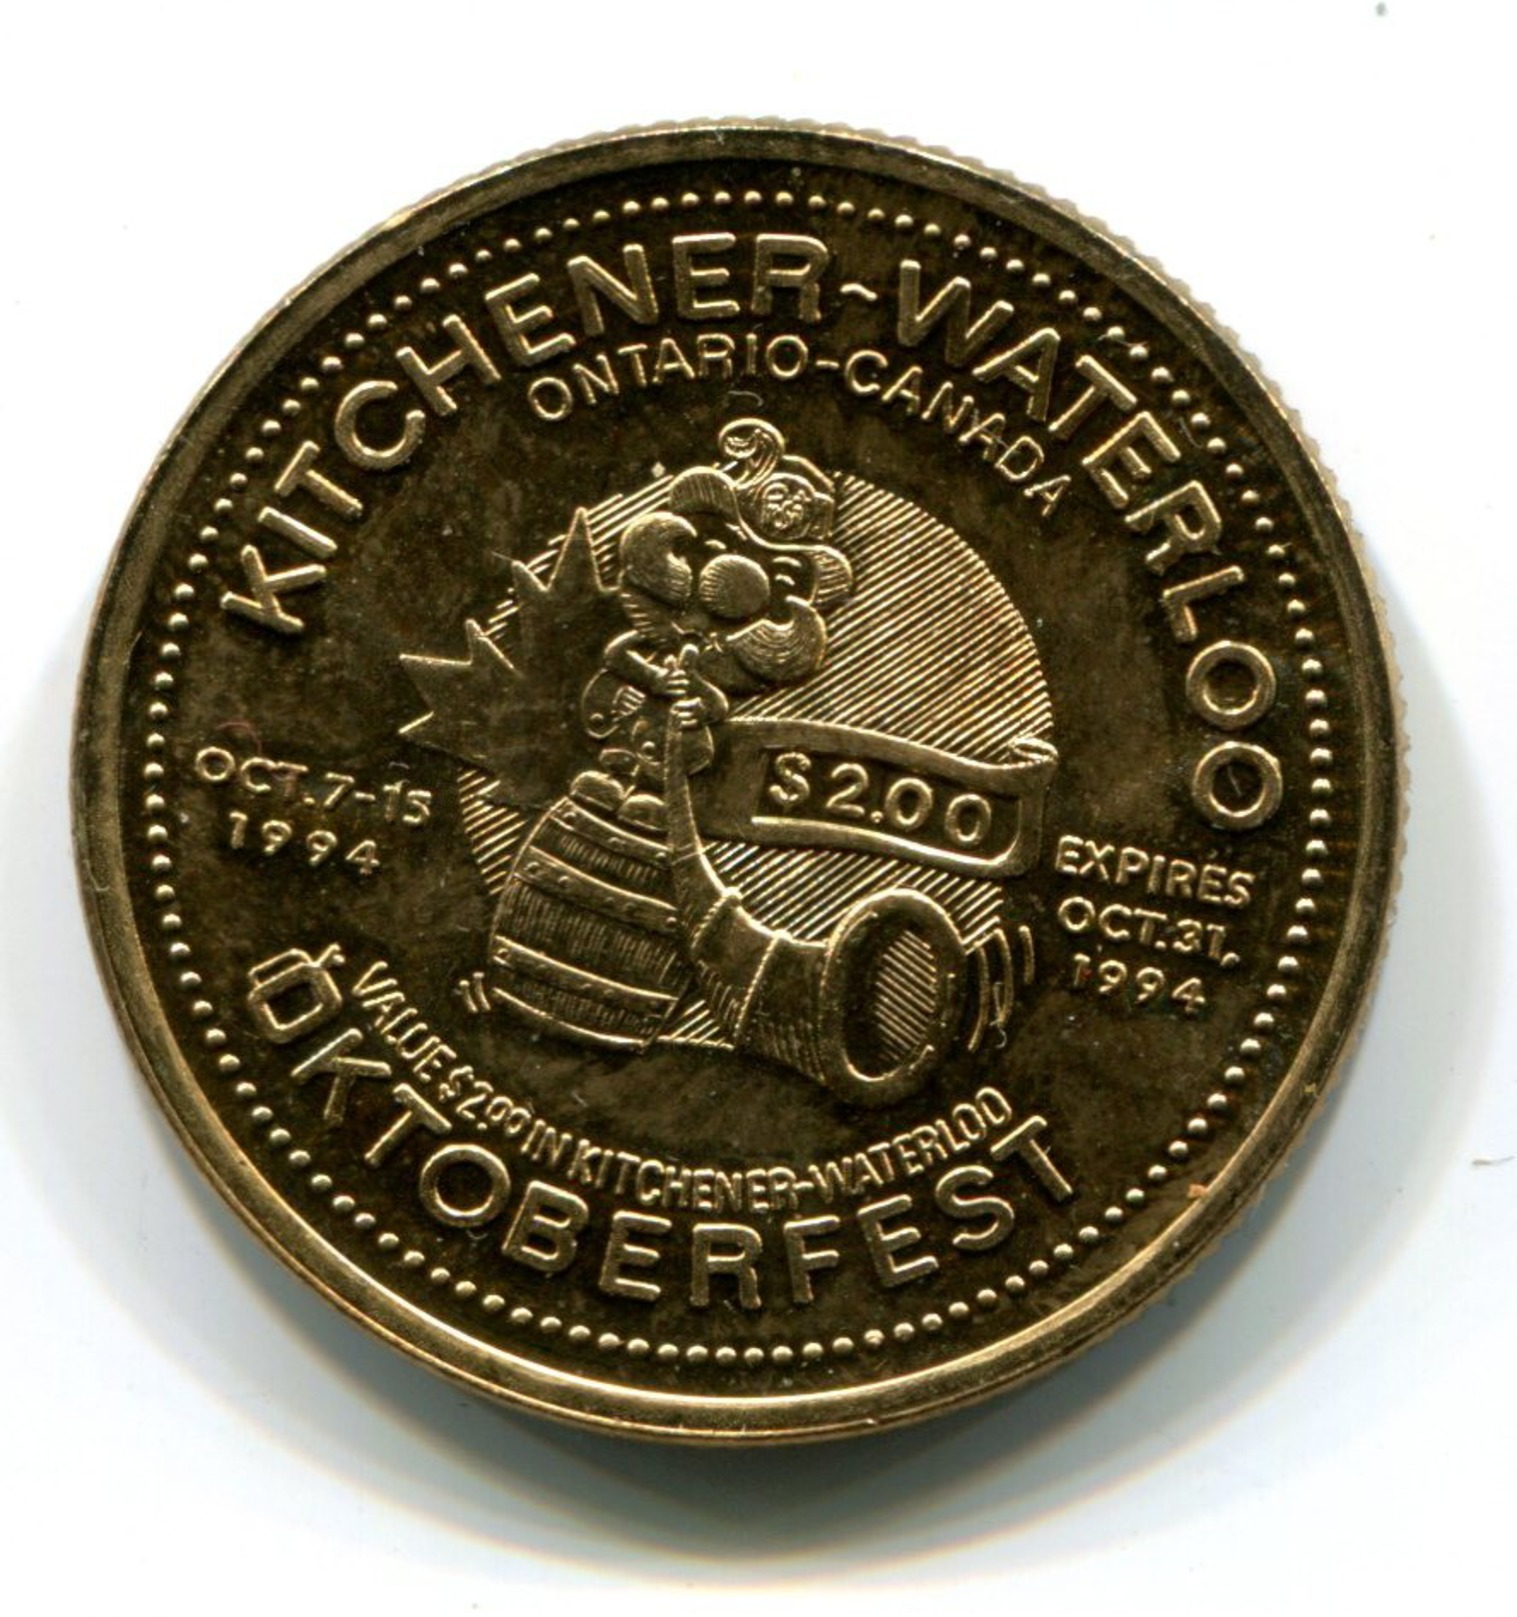 1994 KItchener-Waterloo Canada Oktoberfest $2 Token - Monetary /of Necessity